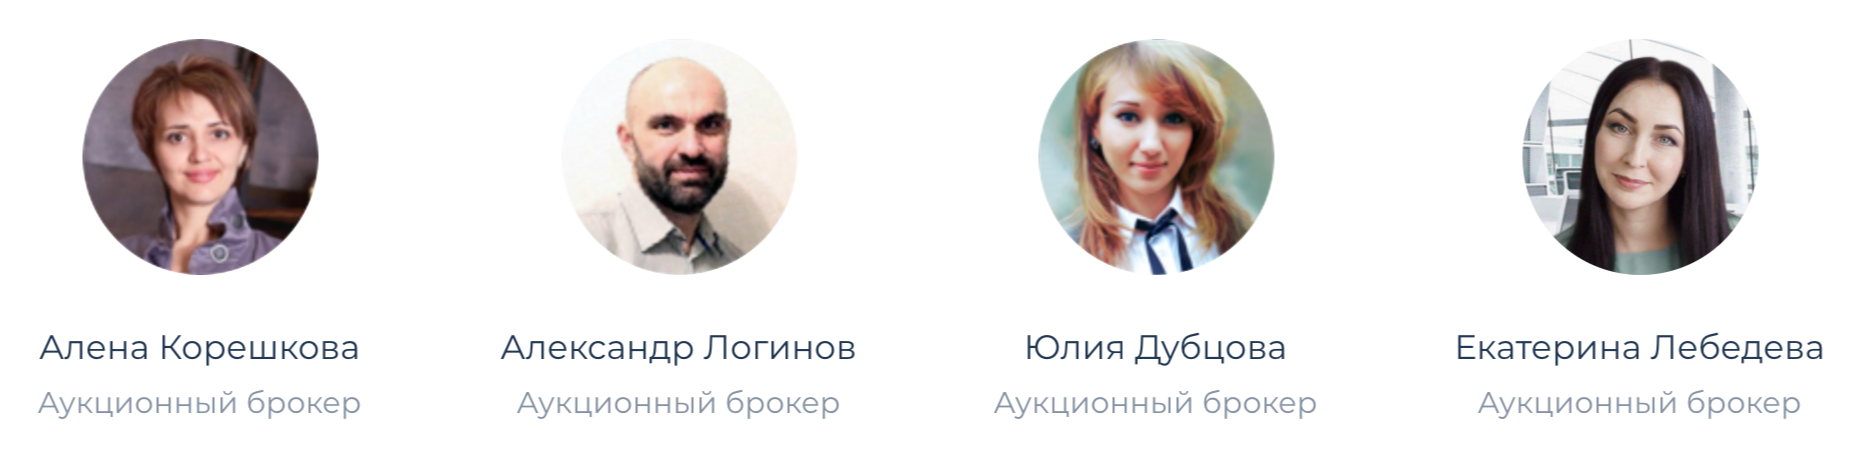 На площадках я нашел только Алену Корешкову, она указана на сайте «Юнитраста» как аукционный брокер